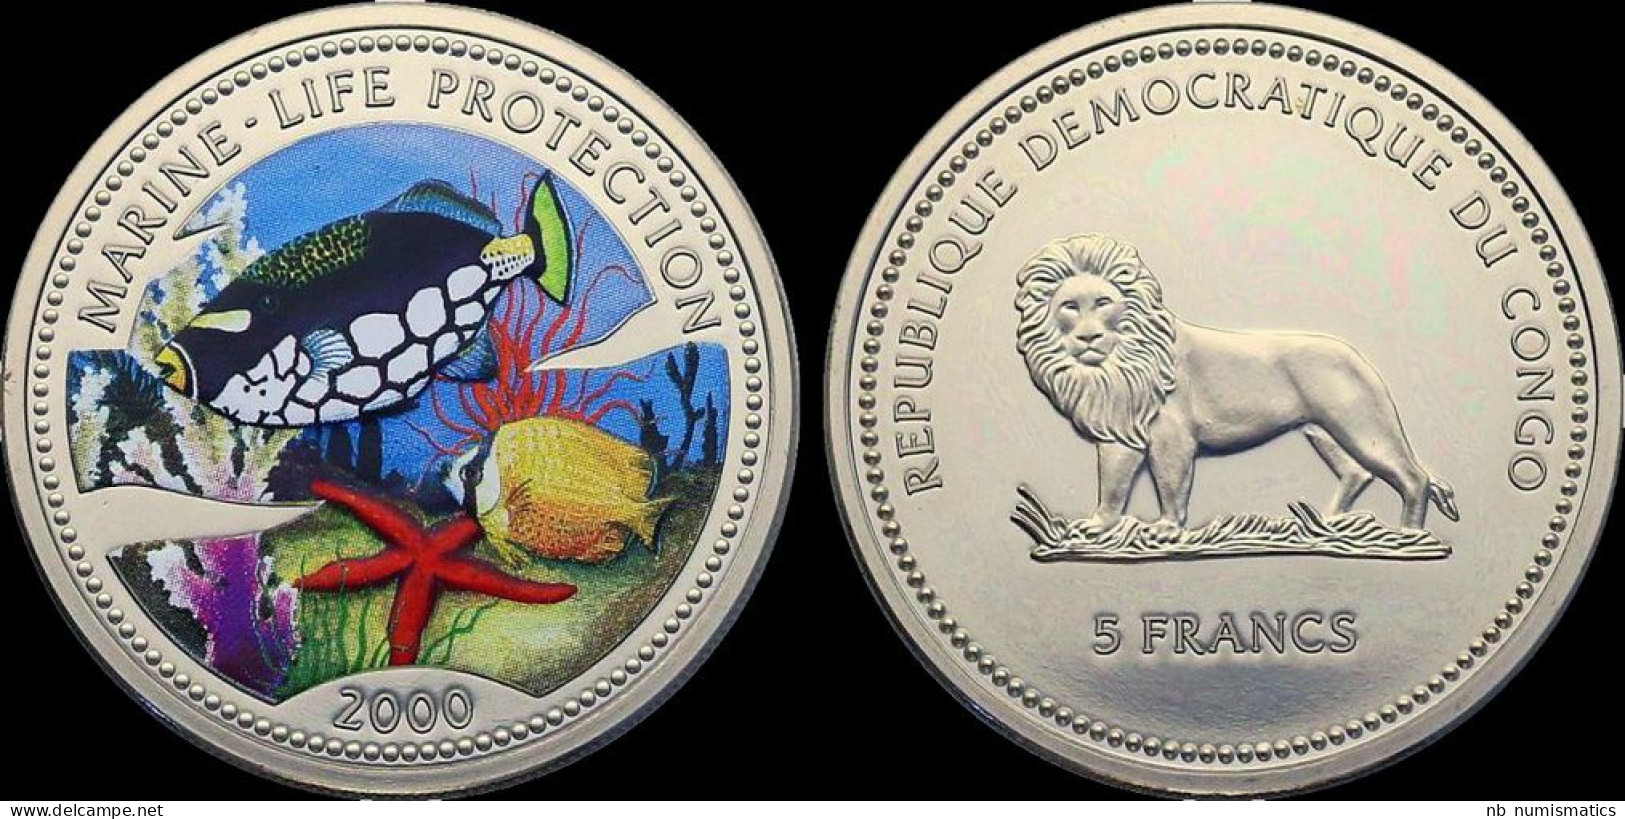 Republique Democratique Du Congo 5 Francs 2000 Marine-life Protection Proof In Plastic Capsule - Congo (République Démocratique 1998)